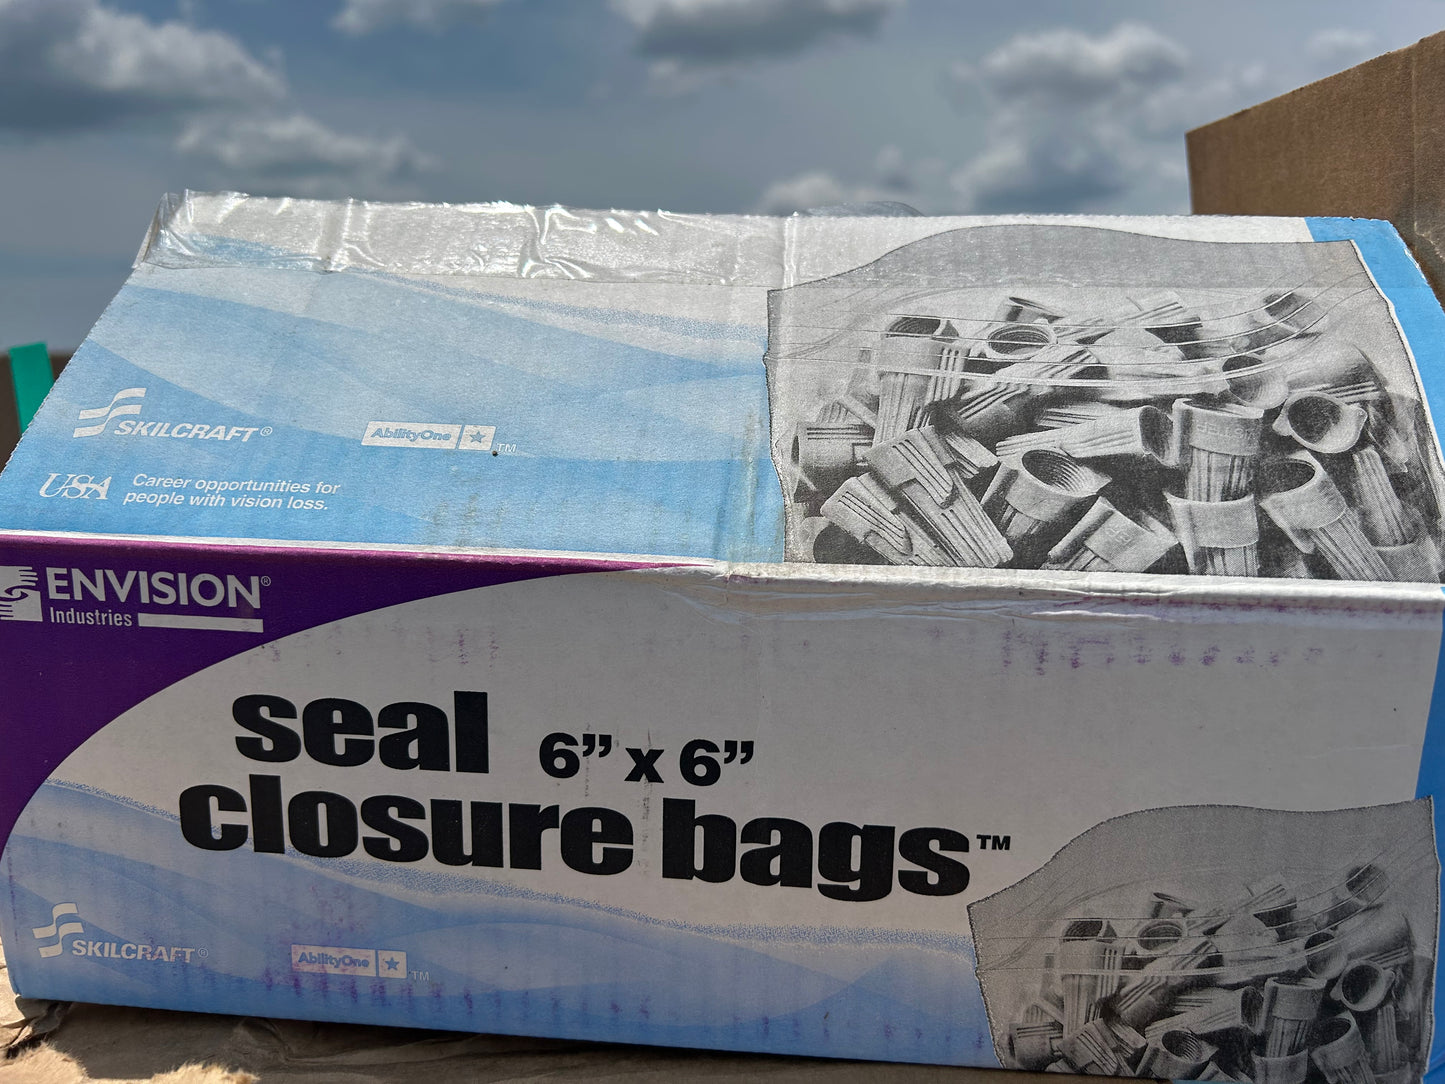 Envision Zipper Seal Closure Bags, Clear, 6" x 6".